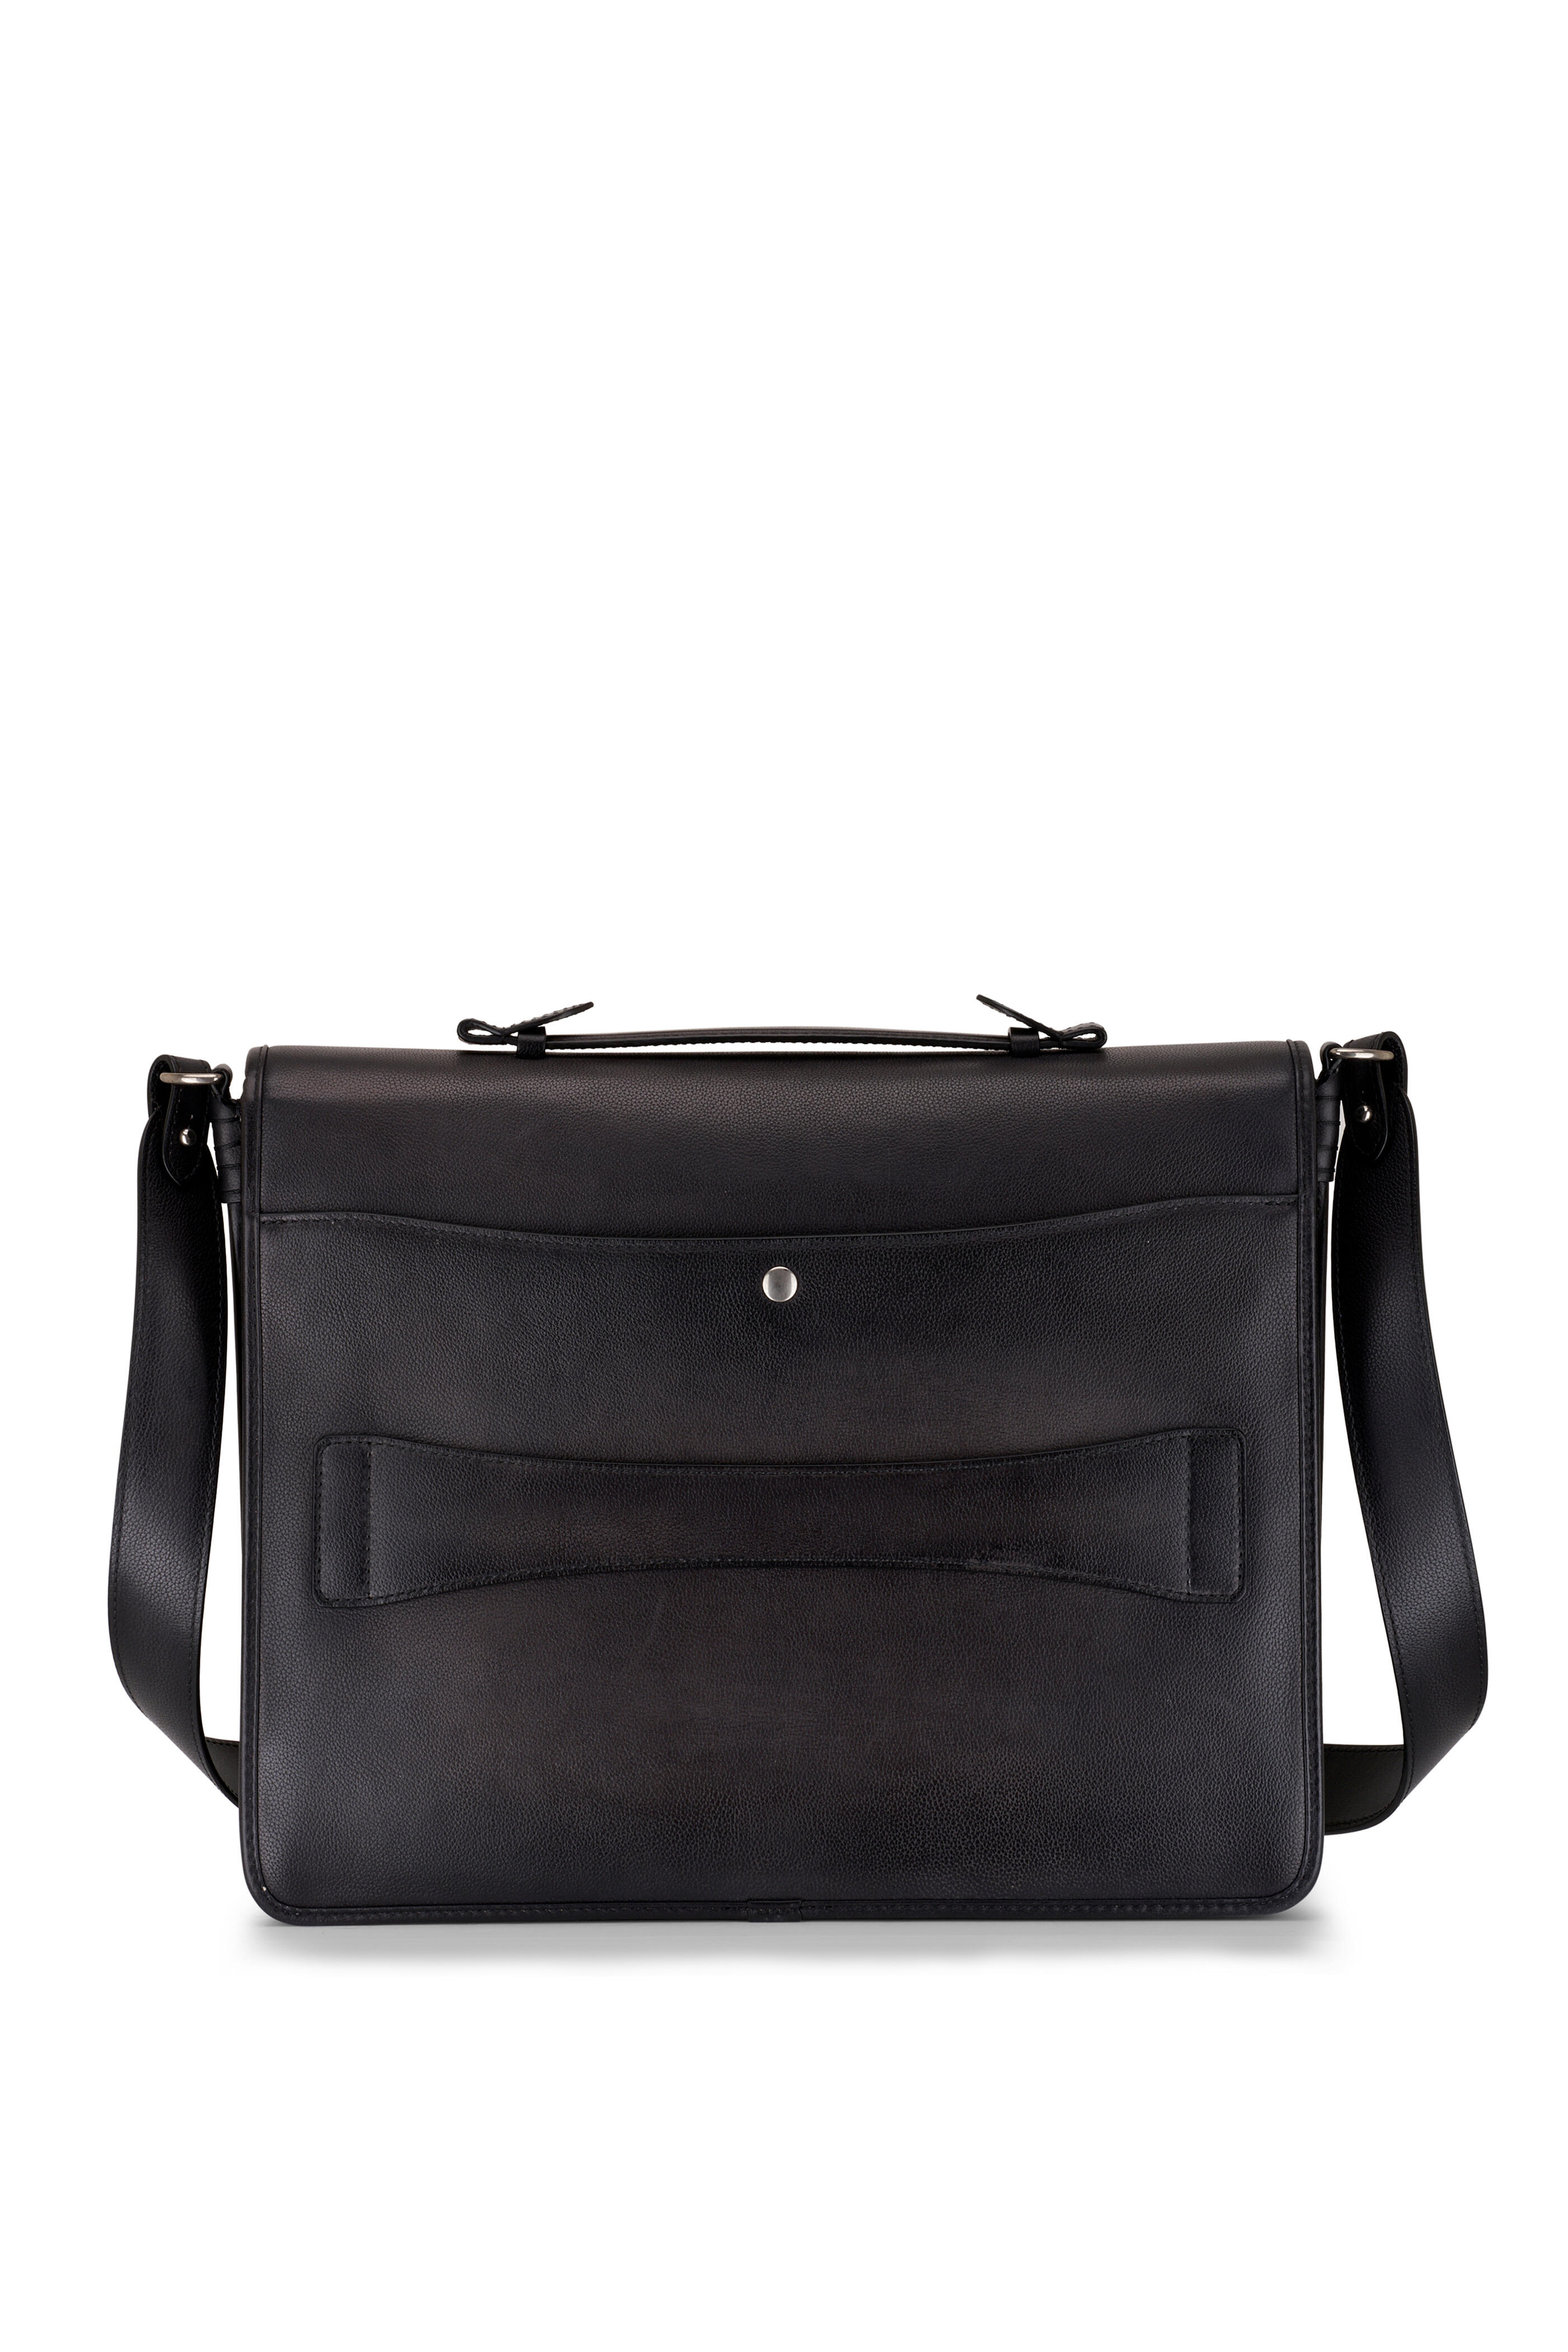 Berluti - Postino Nero Grigio Leather Briefcase | Mitchell Stores